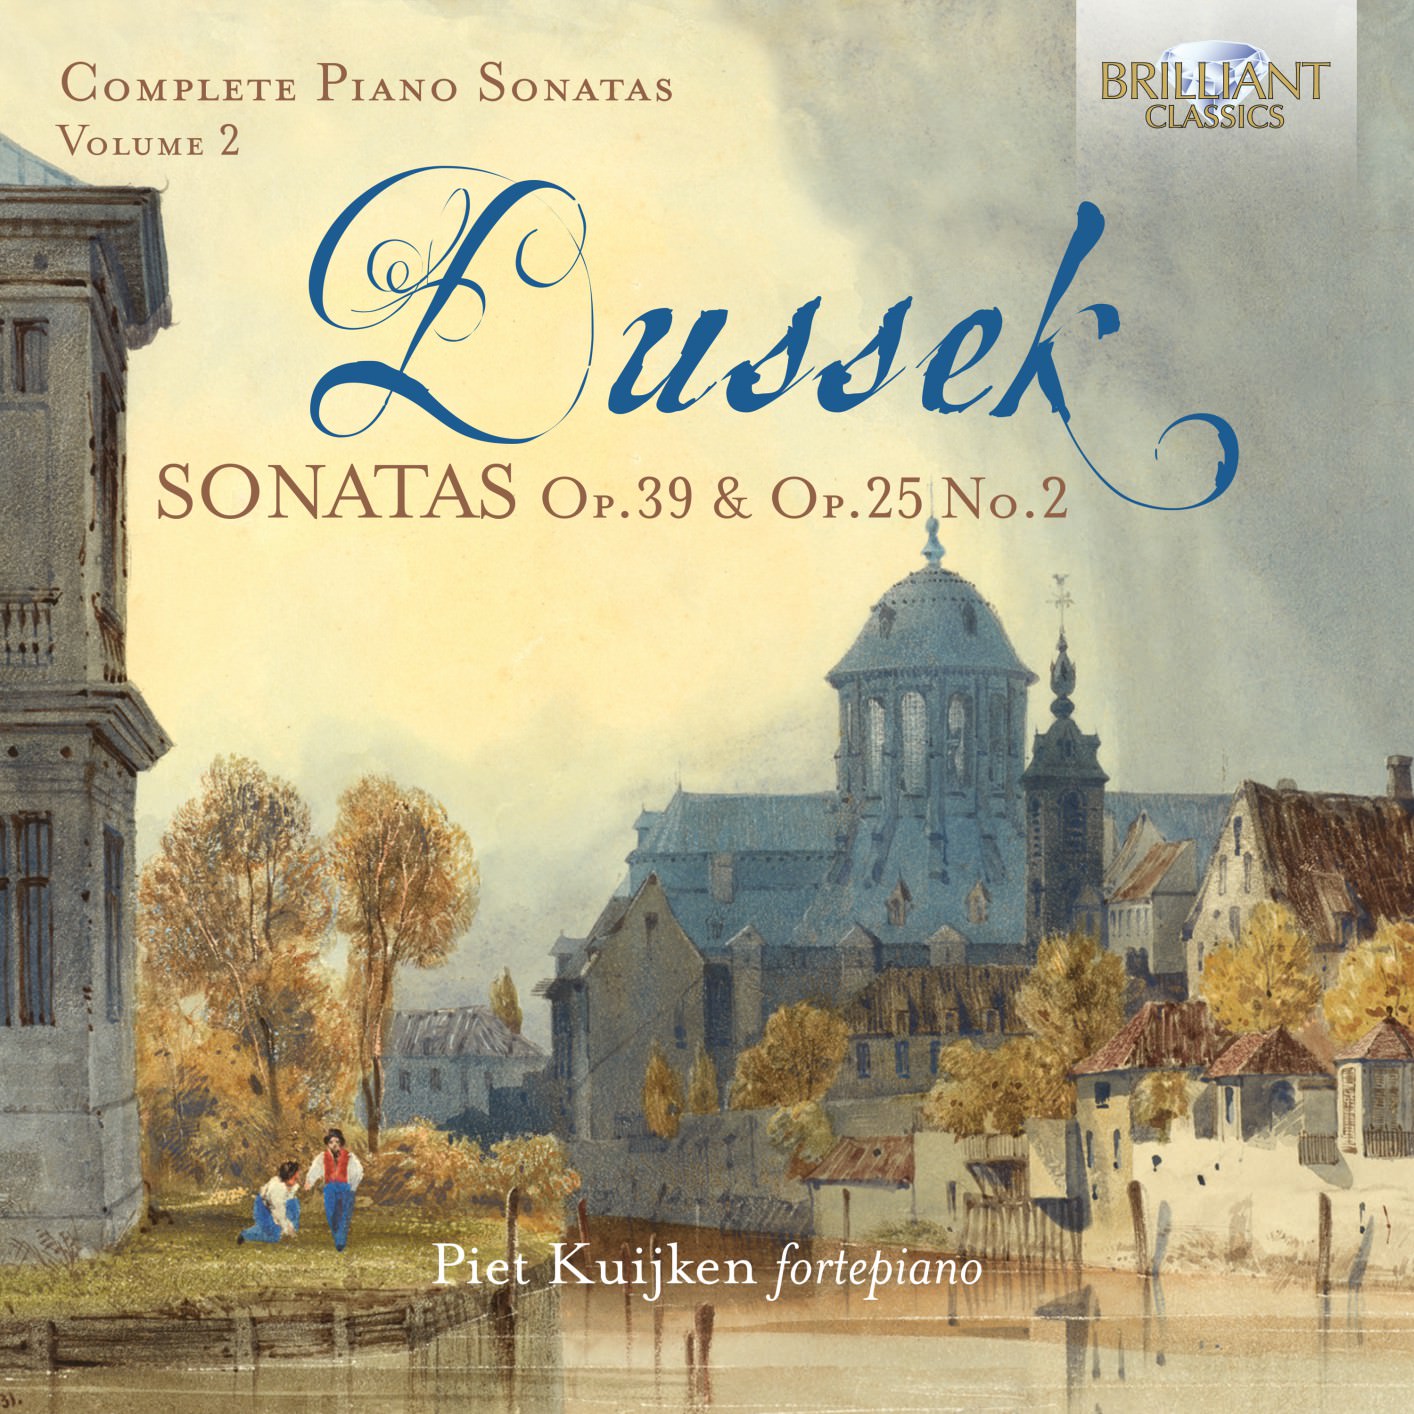 Piet Kuijken – Dussek: Sonatas, Op. 39 & Op.25 No.2 (2018) [FLAC 24bit/96kHz]